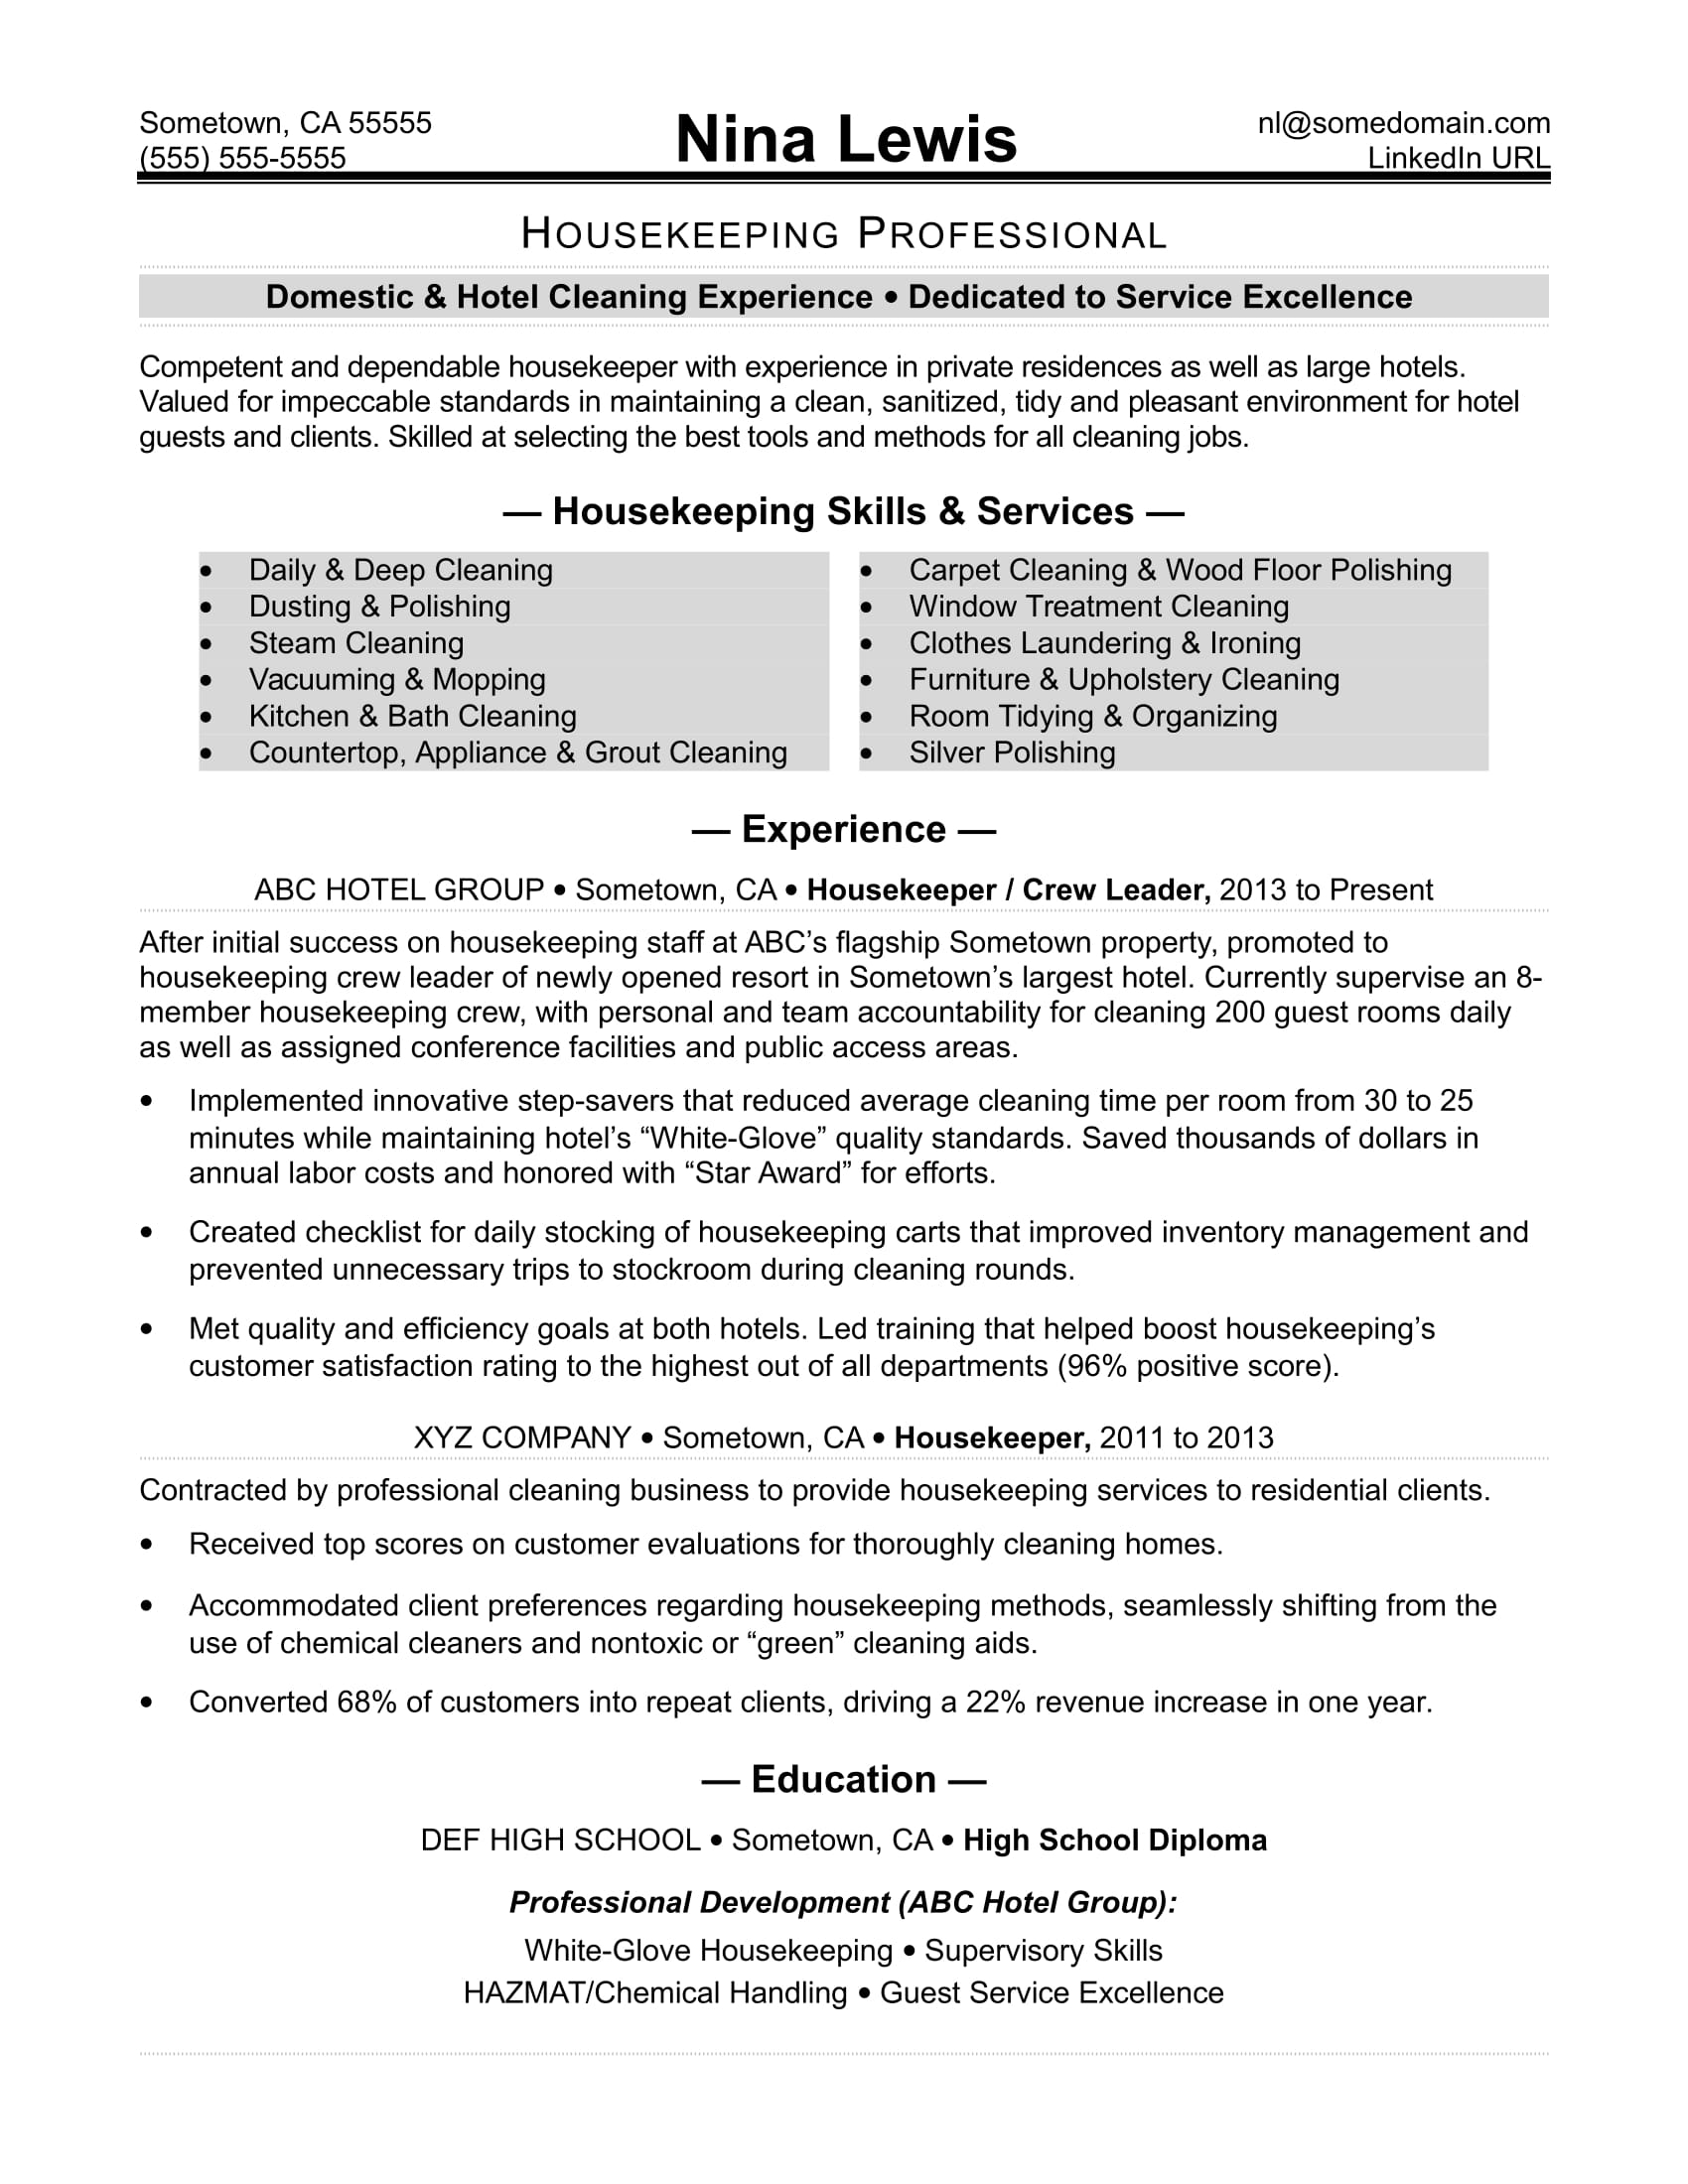 housekeeping resume sample